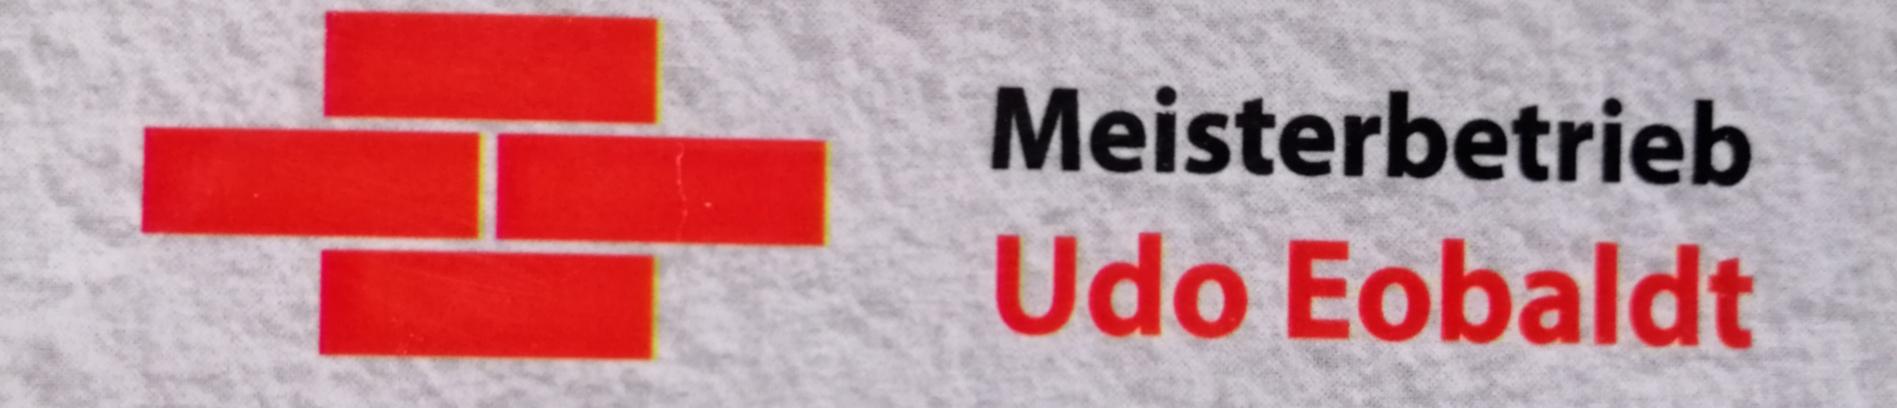 Verwaltungsgemeinschaft Bad Tennstedt Meisterbetrieb Udo